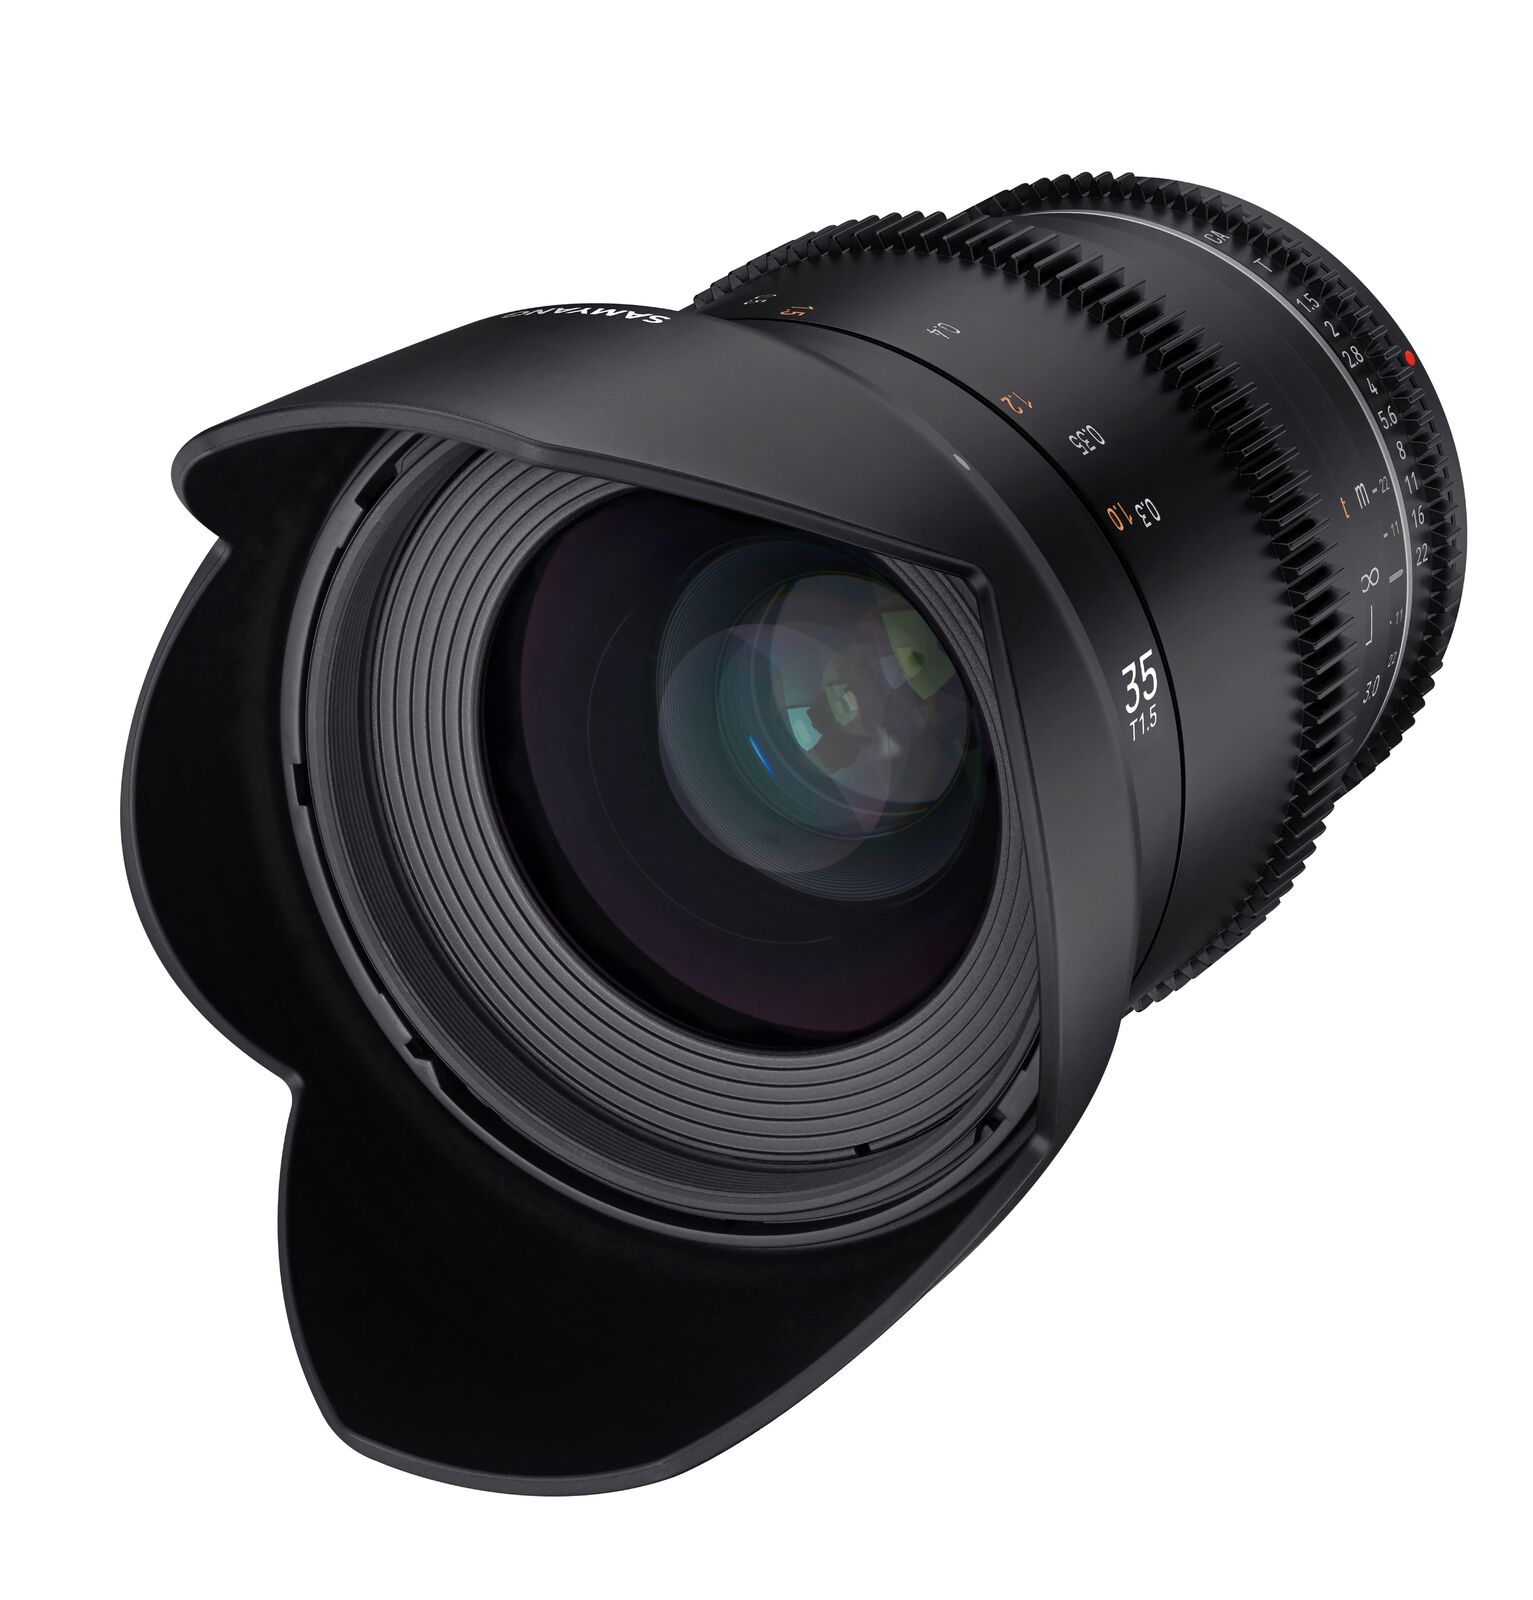 Samyang 35mm T1.5 MK2 MFT Full Frame VDSLR/Cine Lens